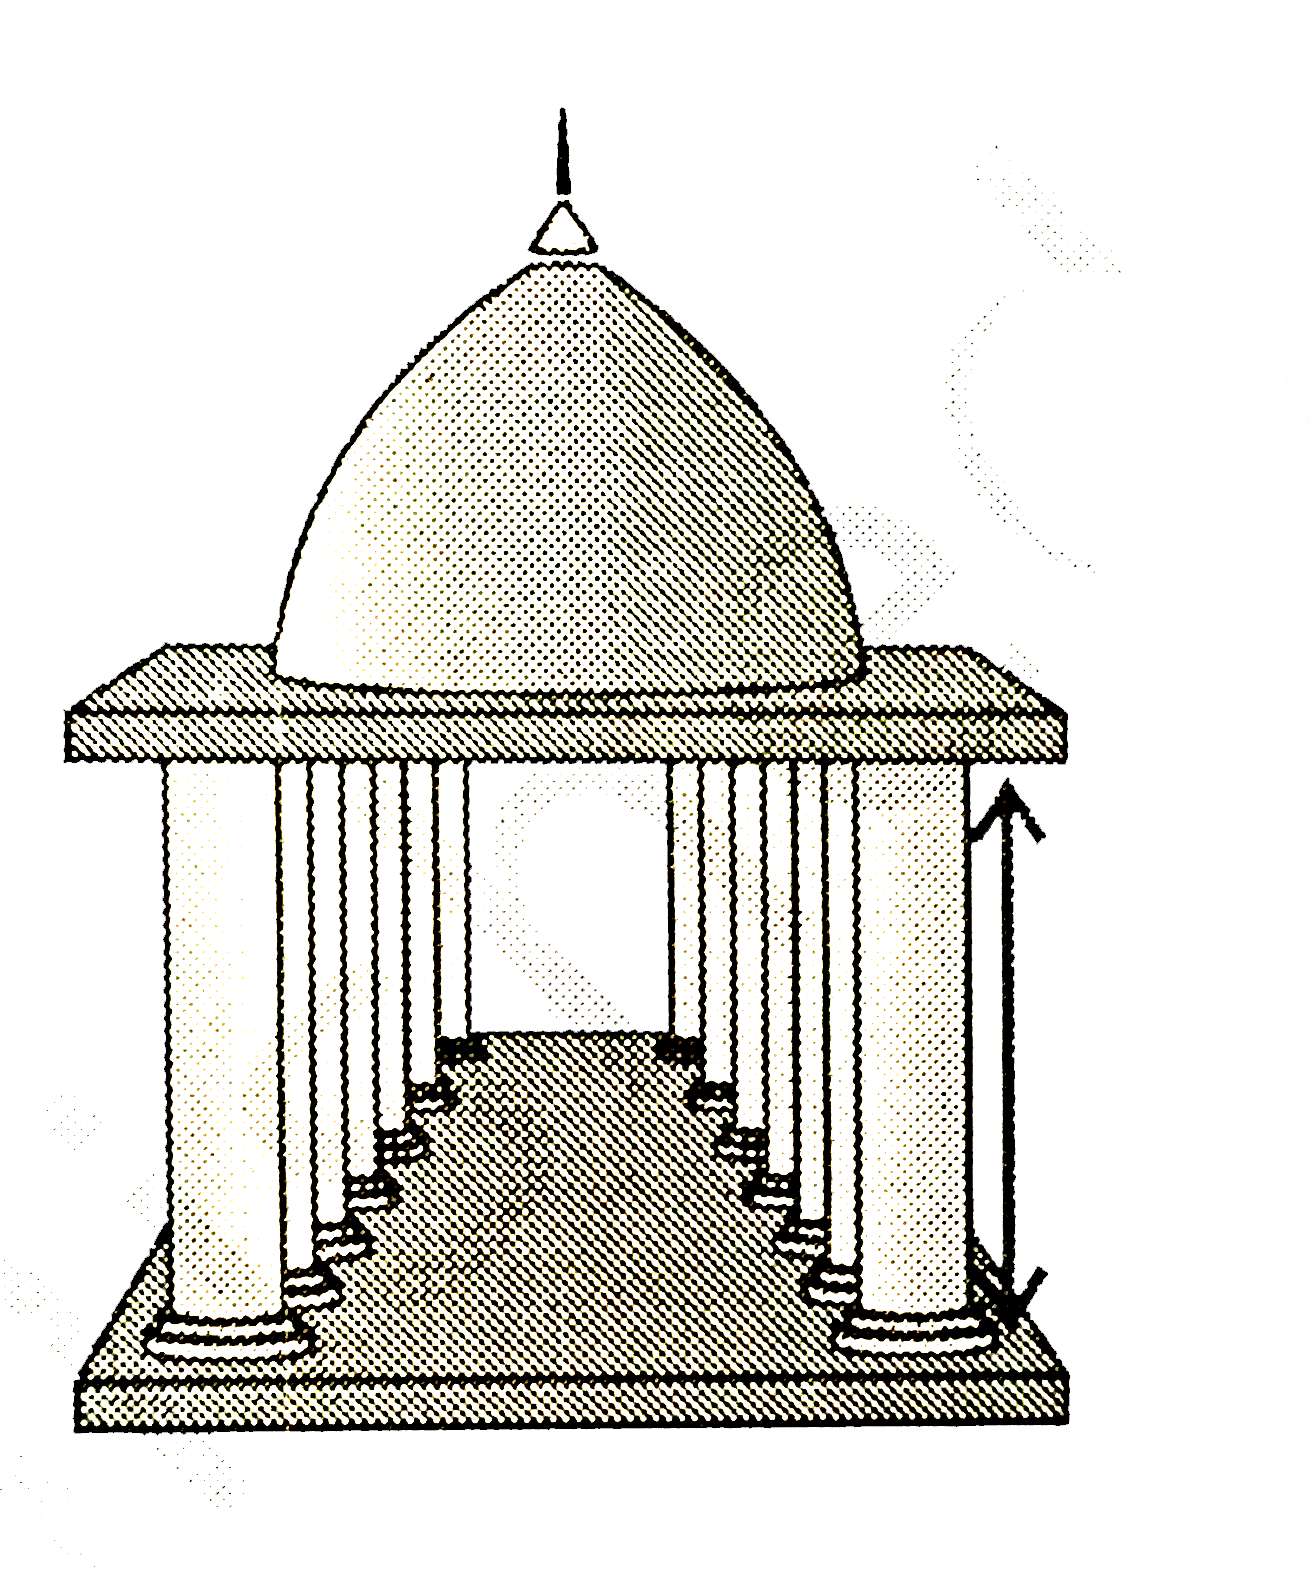 किसी मंदिर के खंभे बेलनाकार है (देखिए आकृति 13.26) | यदि प्रत्येक खंभे का आधार 20 cm त्रिज्या का एक वृतीय क्षेत्र है और ऊंचाई 10 m है, तो ऐसे 14  खंभे बनाने में कितने कंक्रीट मिश्रण की आवश्यकता होगी ?